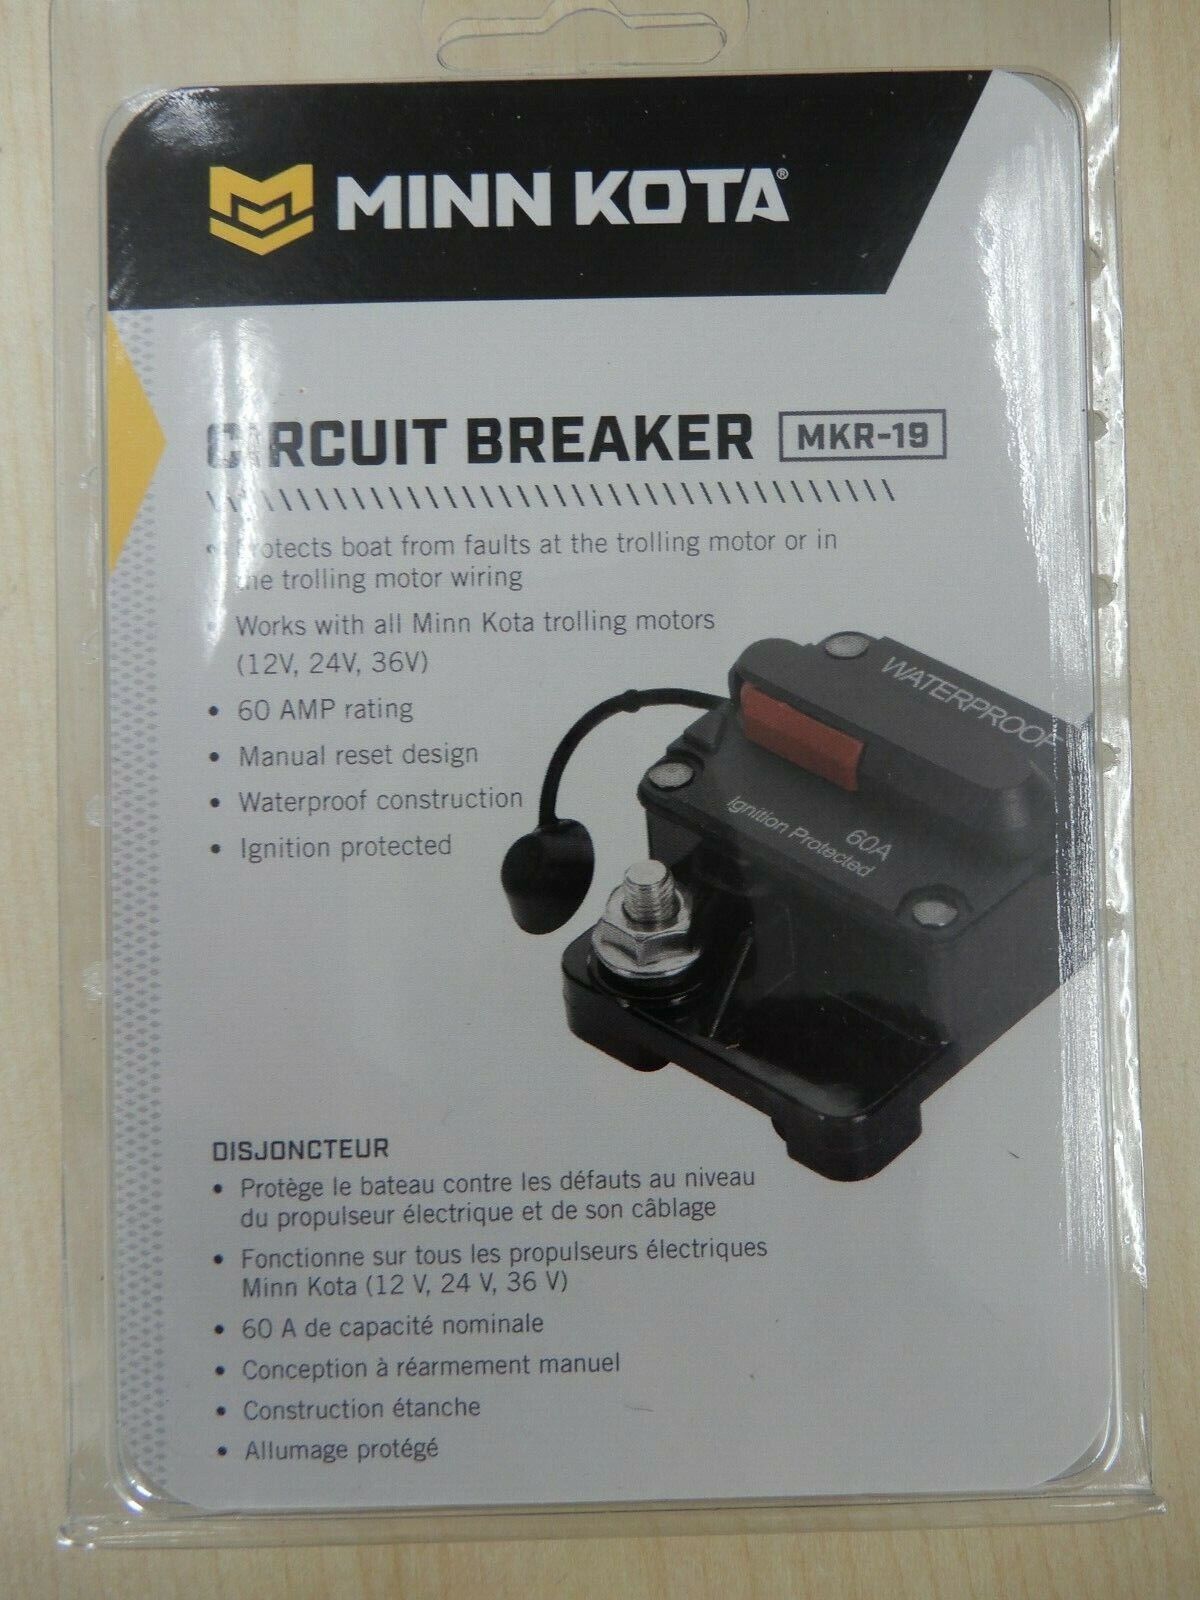 60 amp circuit breaker trolling motor Minn Kota MKR-19 1865103 heavy duty